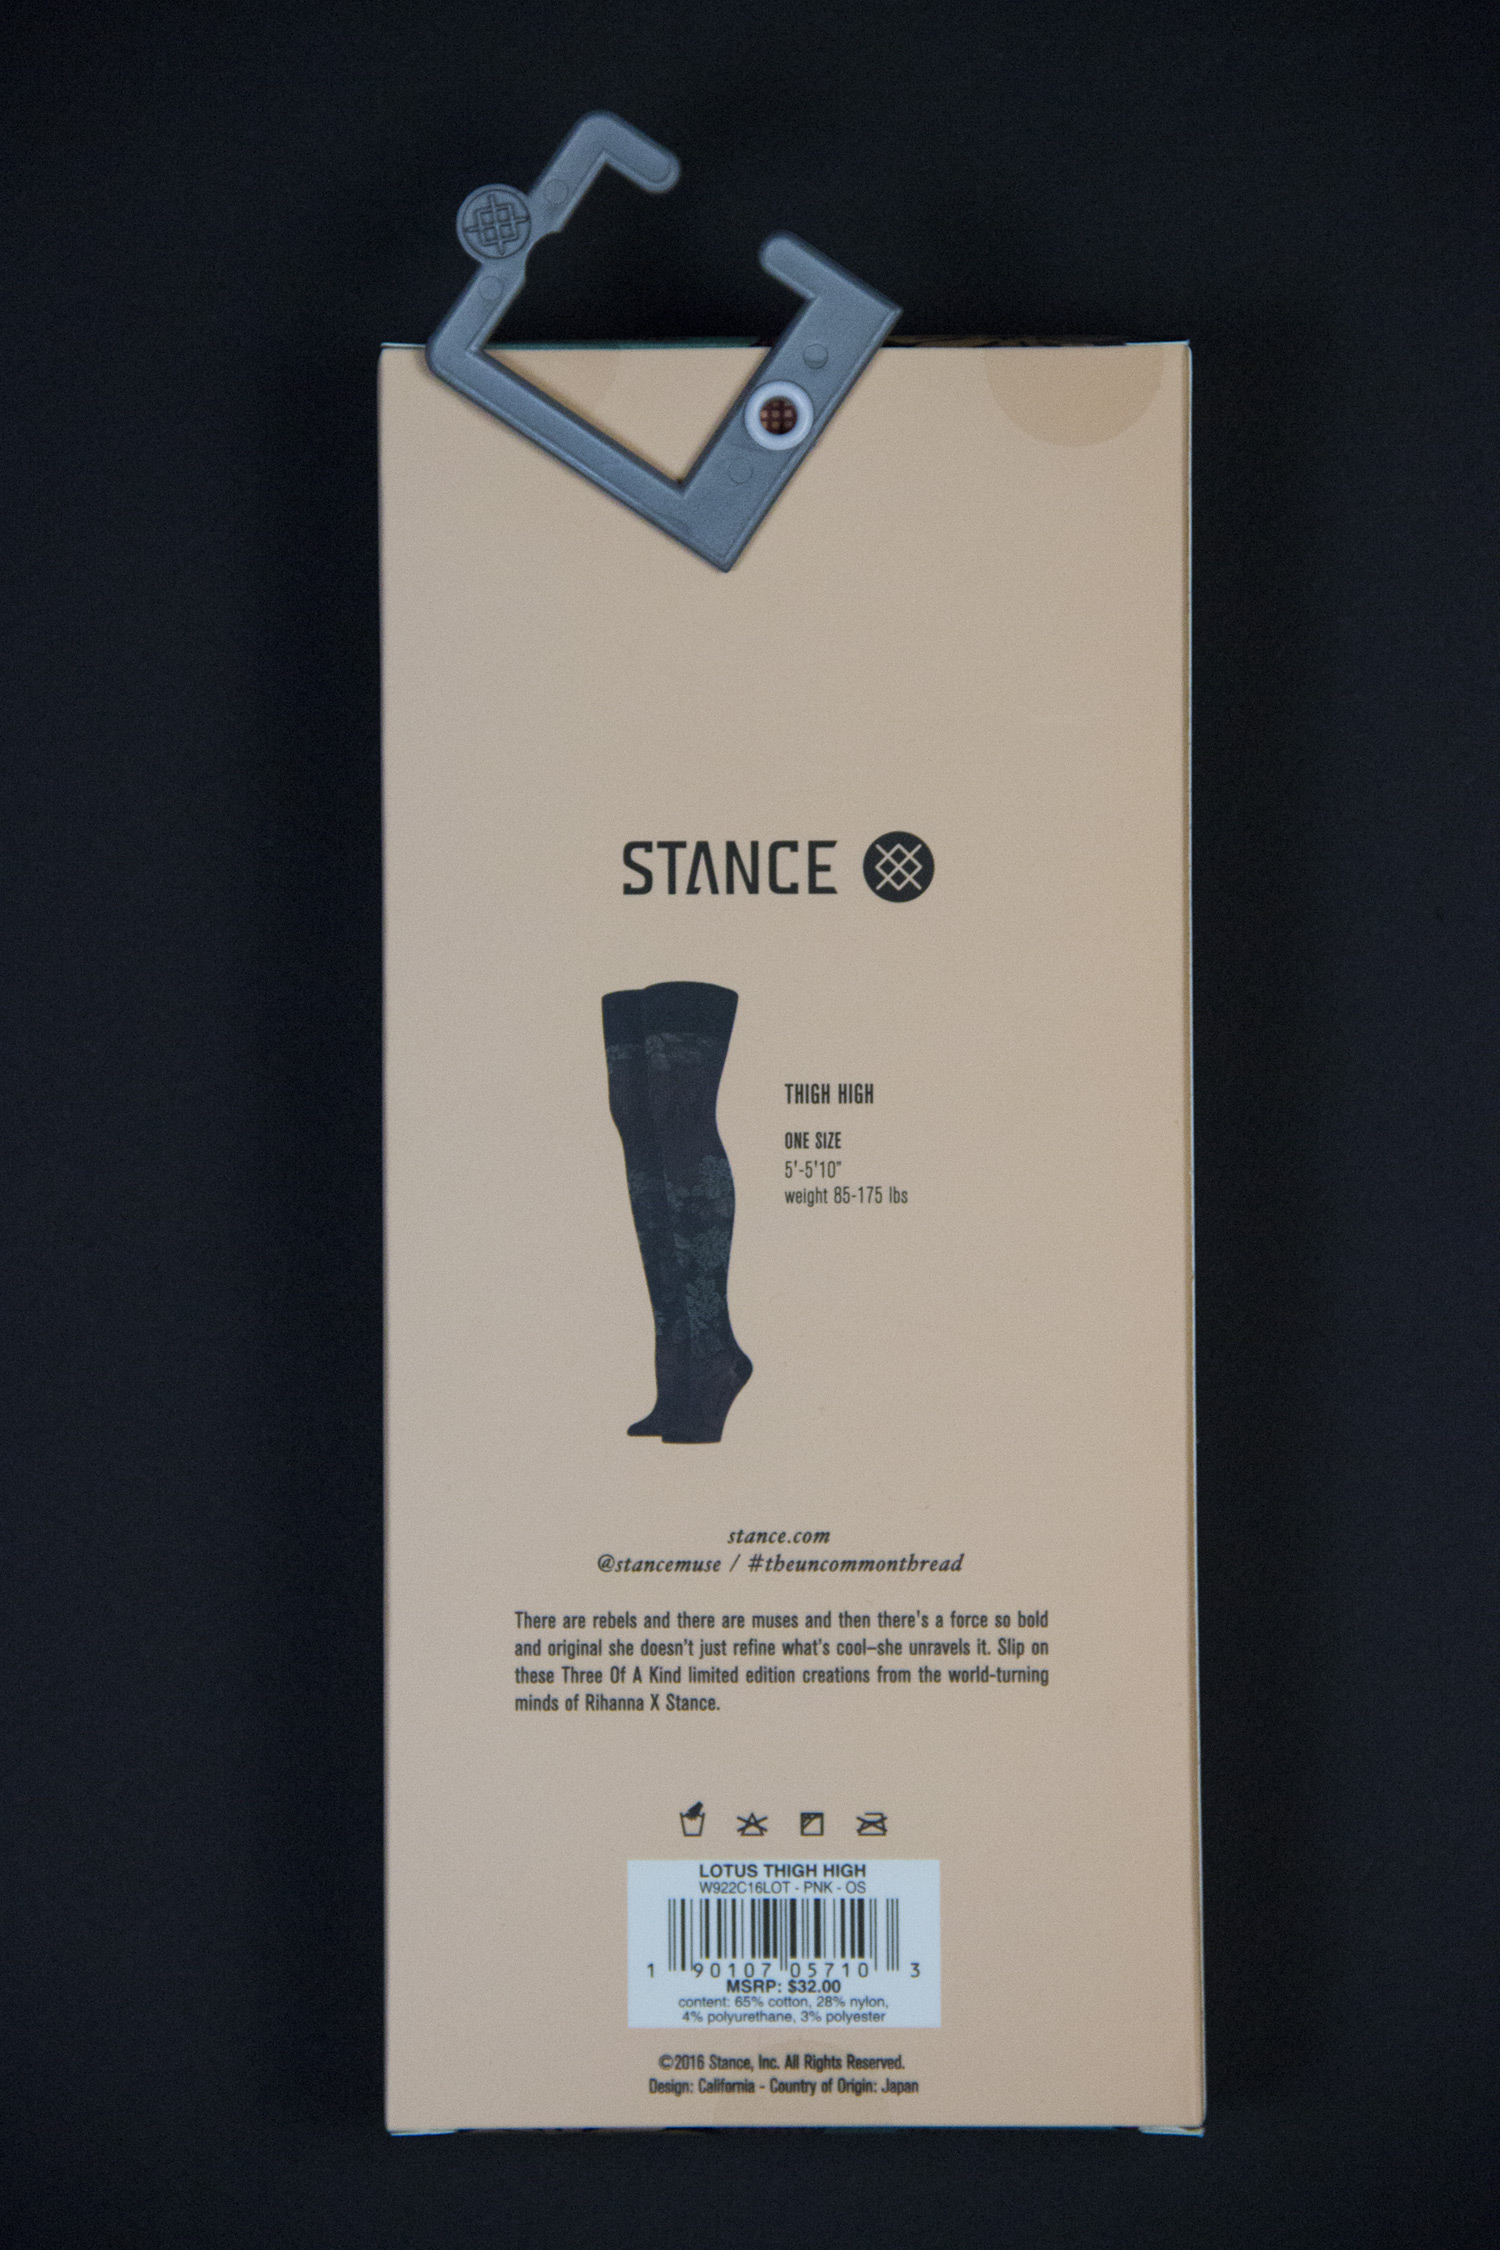 Обзор чулок и гольфин из коллаборации Stance x Rihanna. Упаковка